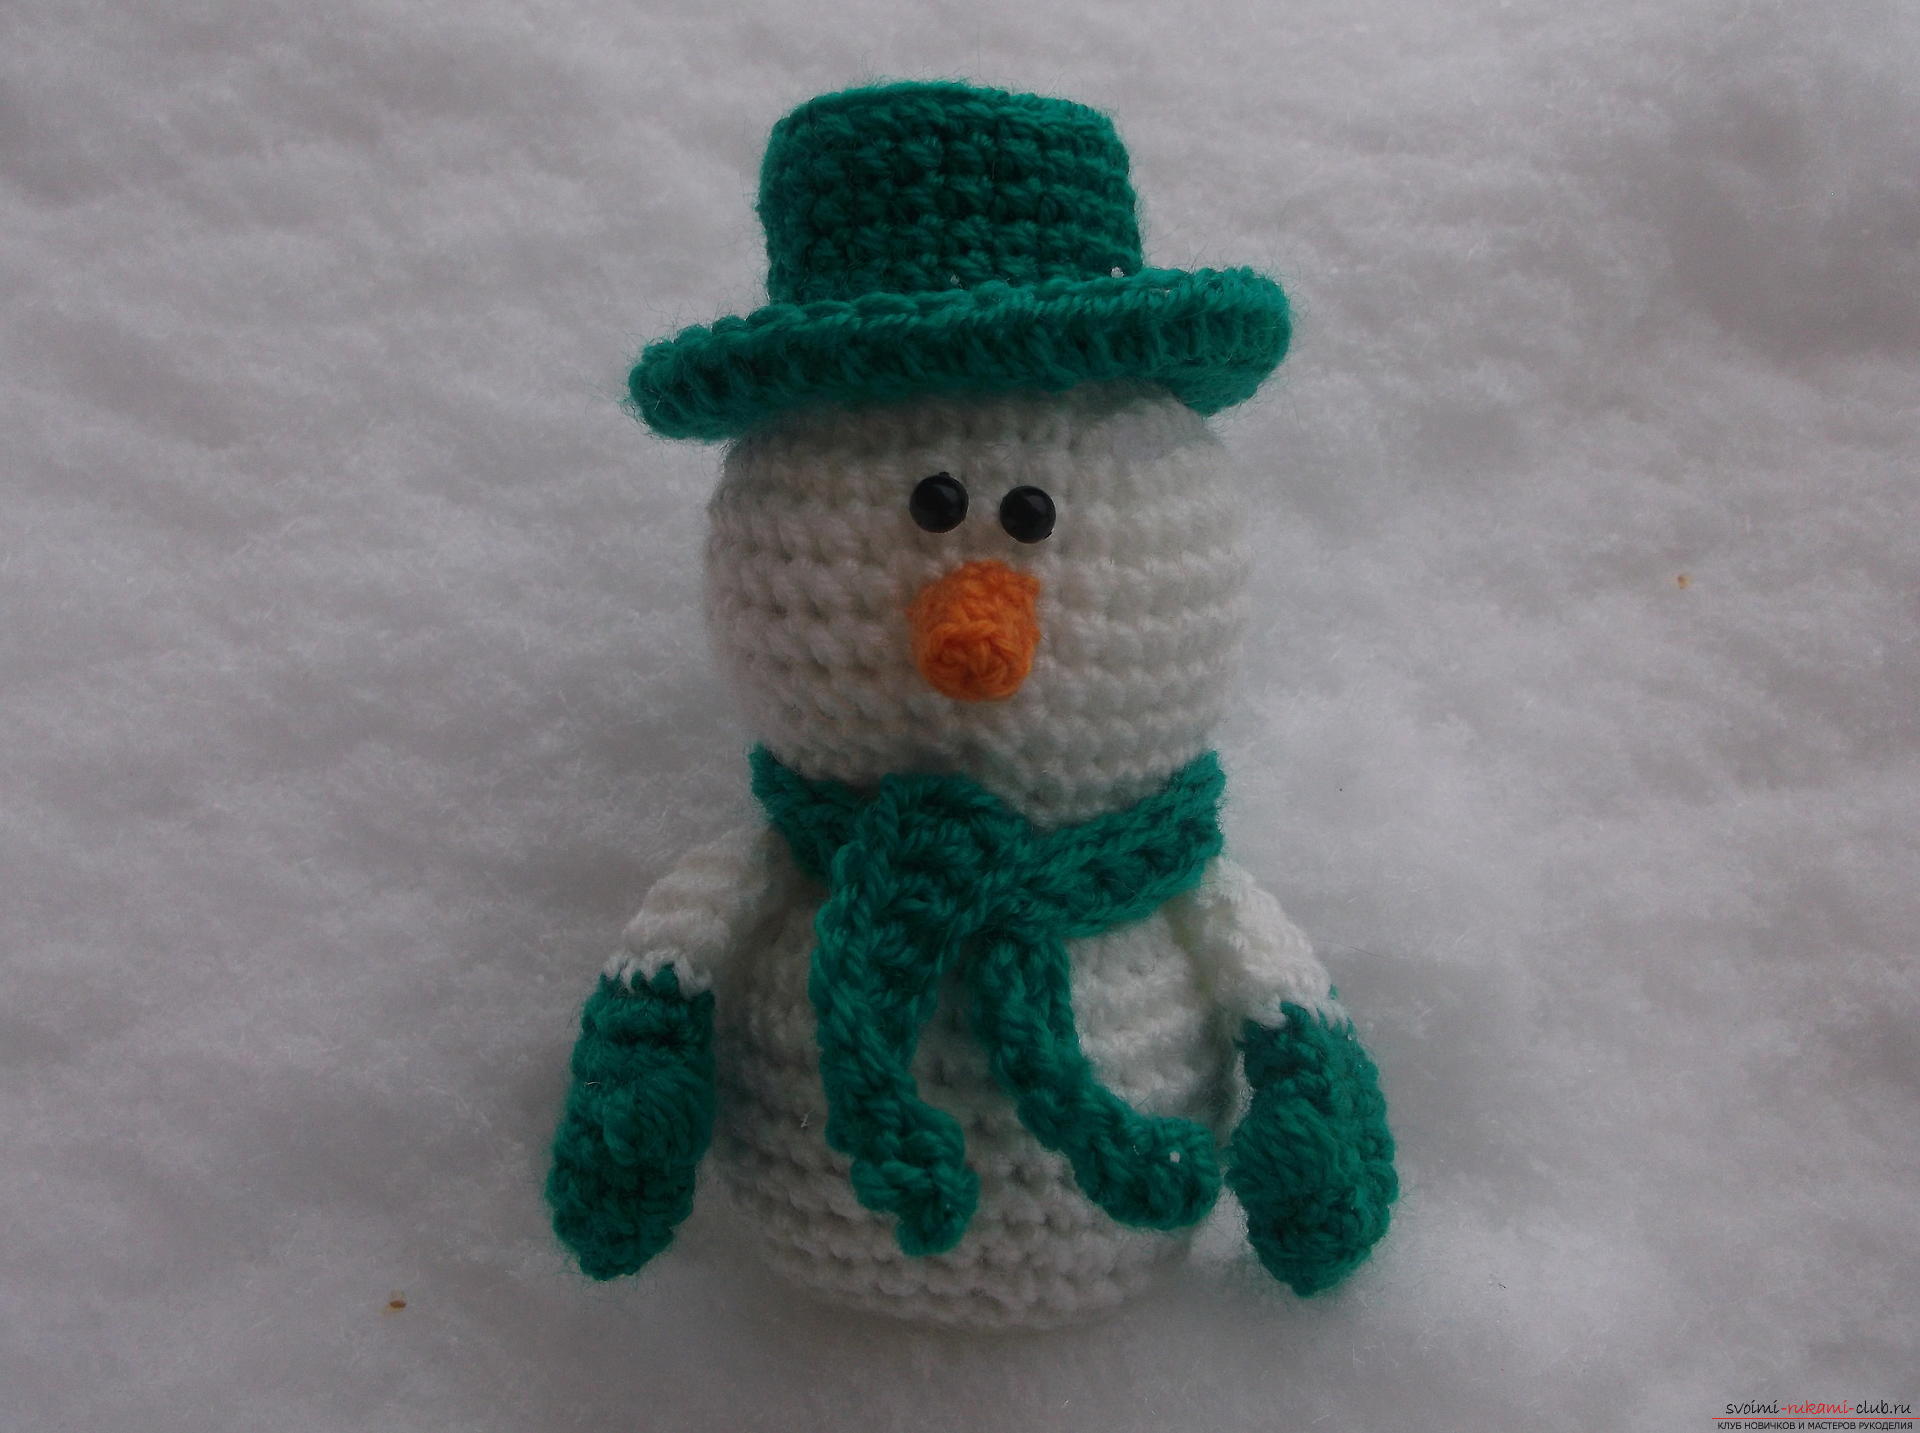 Мастер-класс научит как связать симпатичную новогоднюю поделку - снеговика в шляпе. Фото №10